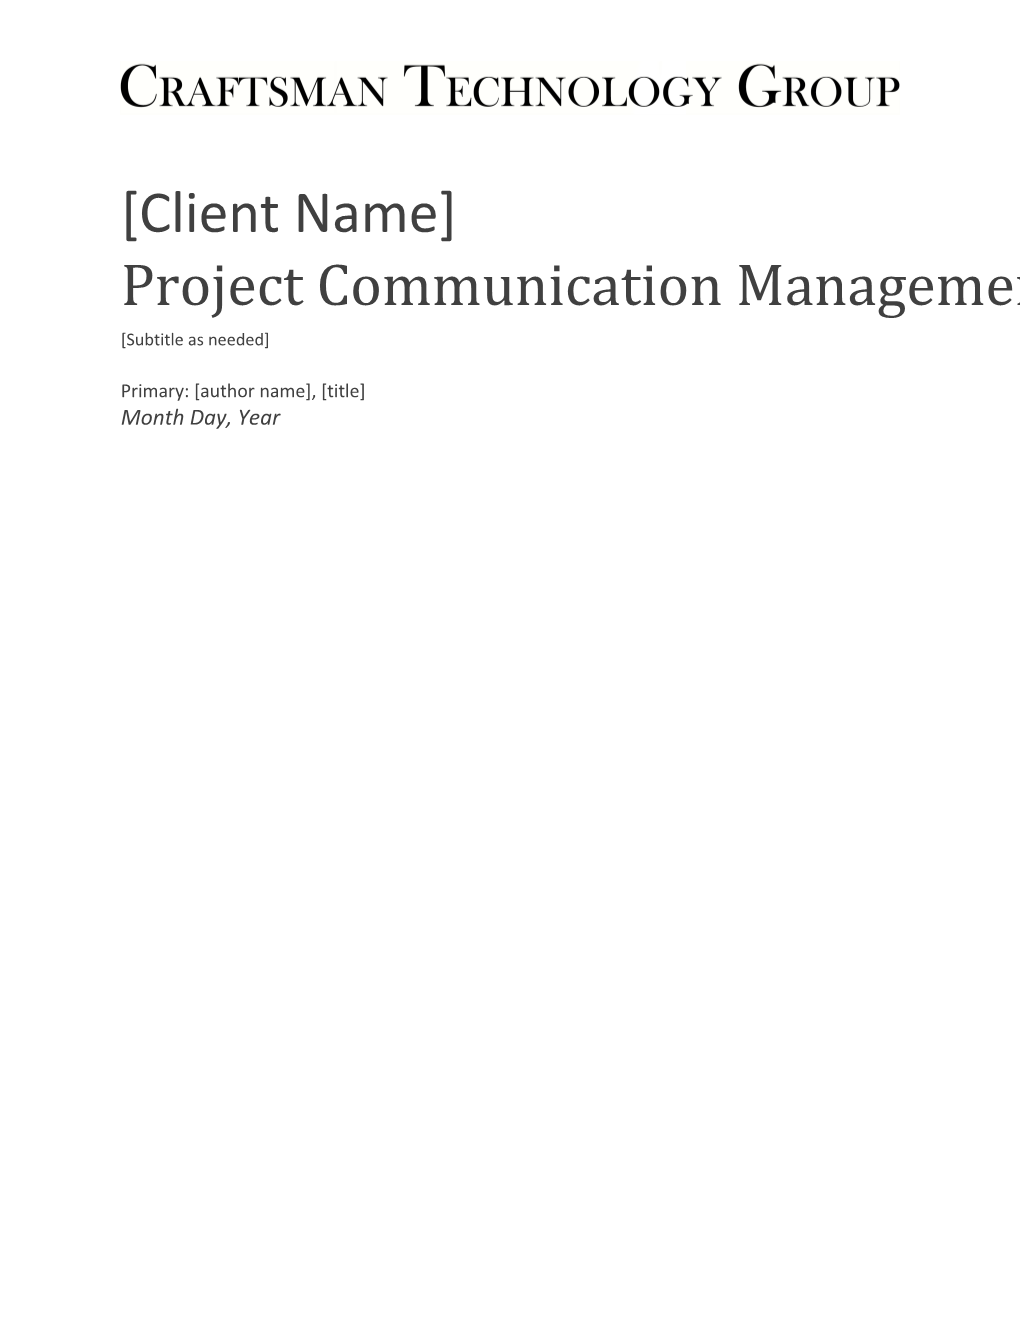 Project Communication Management Plan